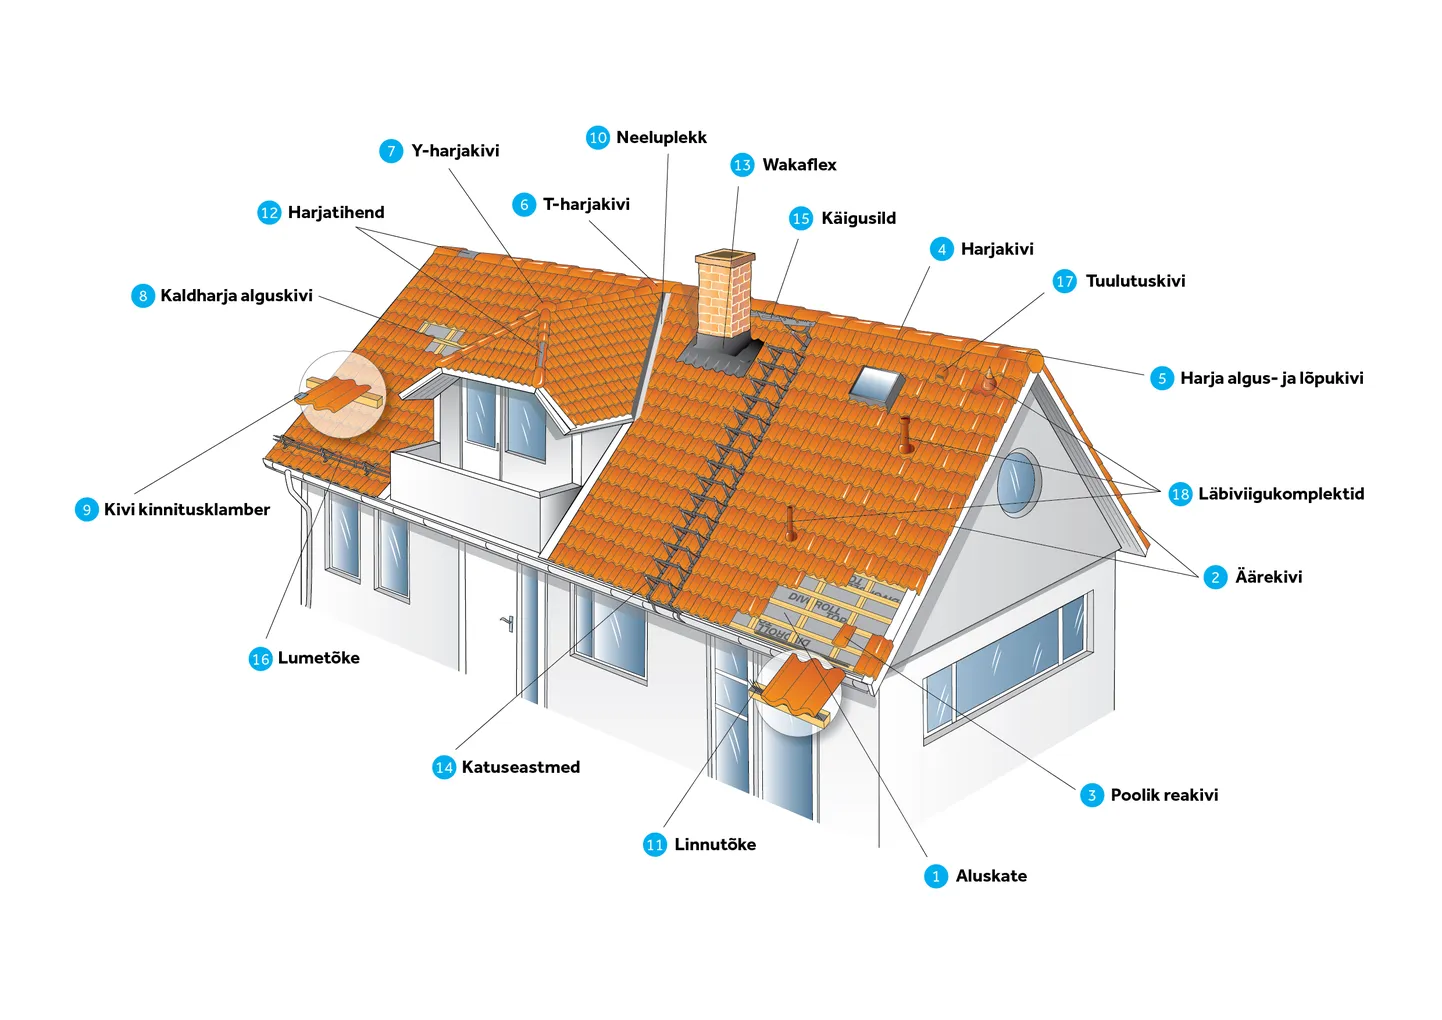 Katus ei koosne vaid katusekattematerjalidest, vaid väga paljudest eriosadest. Et vältida katusetööde keskel tekkivad ebameeldivad hinnaüllatusi, on oluline jälgida, et algne hinnapakkumine sisaldaks piisavas koguses kõiki olulisi katusedetaile.